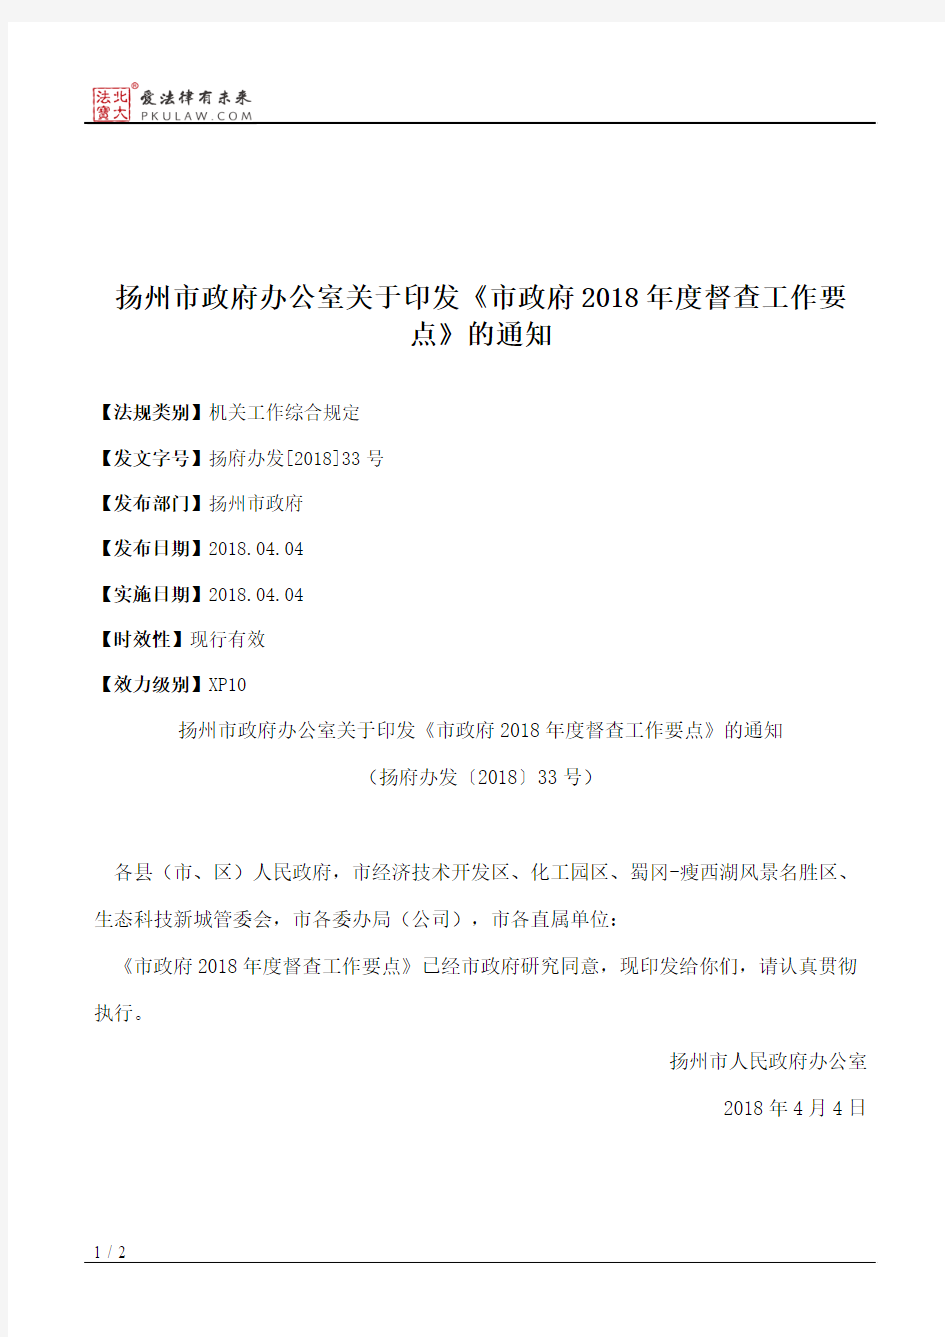 扬州市政府办公室关于印发《市政府2018年度督查工作要点》的通知